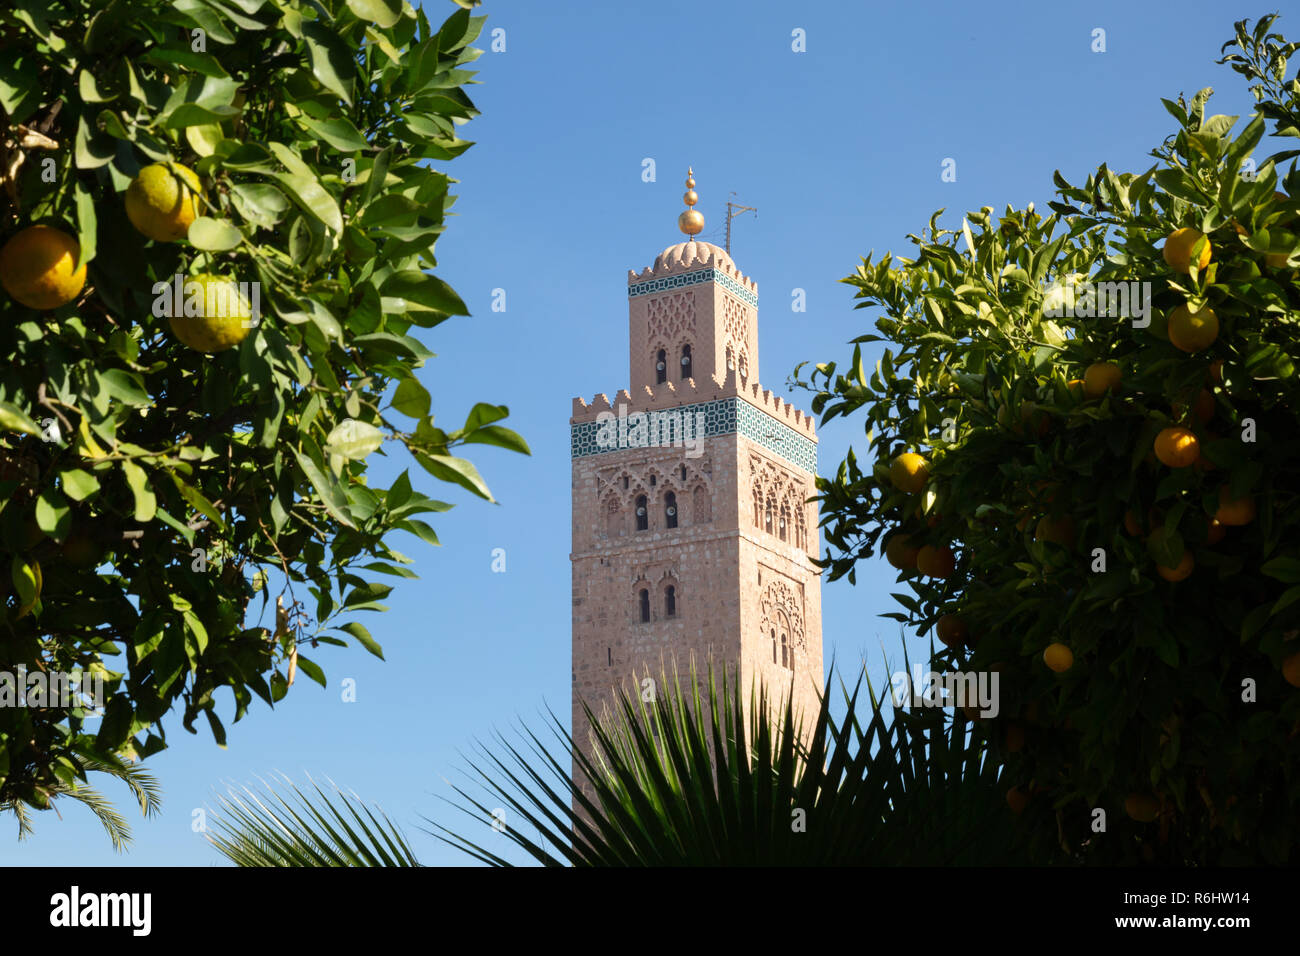 Moschee Koutoubia, Marrakesch, - Begriff - Moslem Islam, die größte und älteste Moschee in Marrakesch, Marokko, Nordafrika Stockfoto